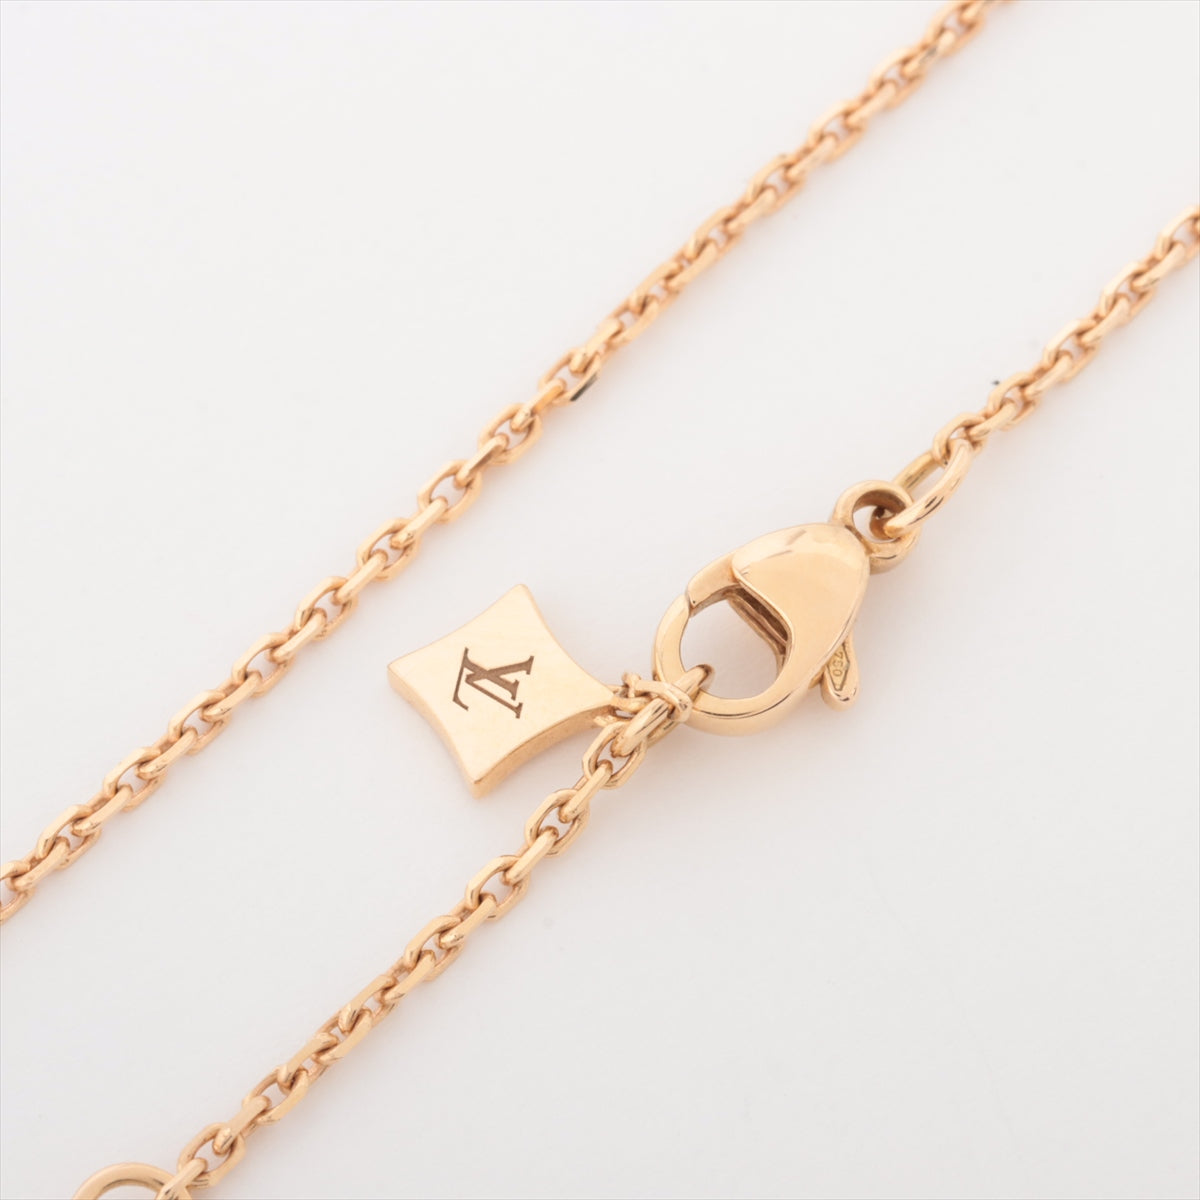 Louis Vuitton Pandantif Star Blossom Double diamond Necklace 750(PG) 6.6g